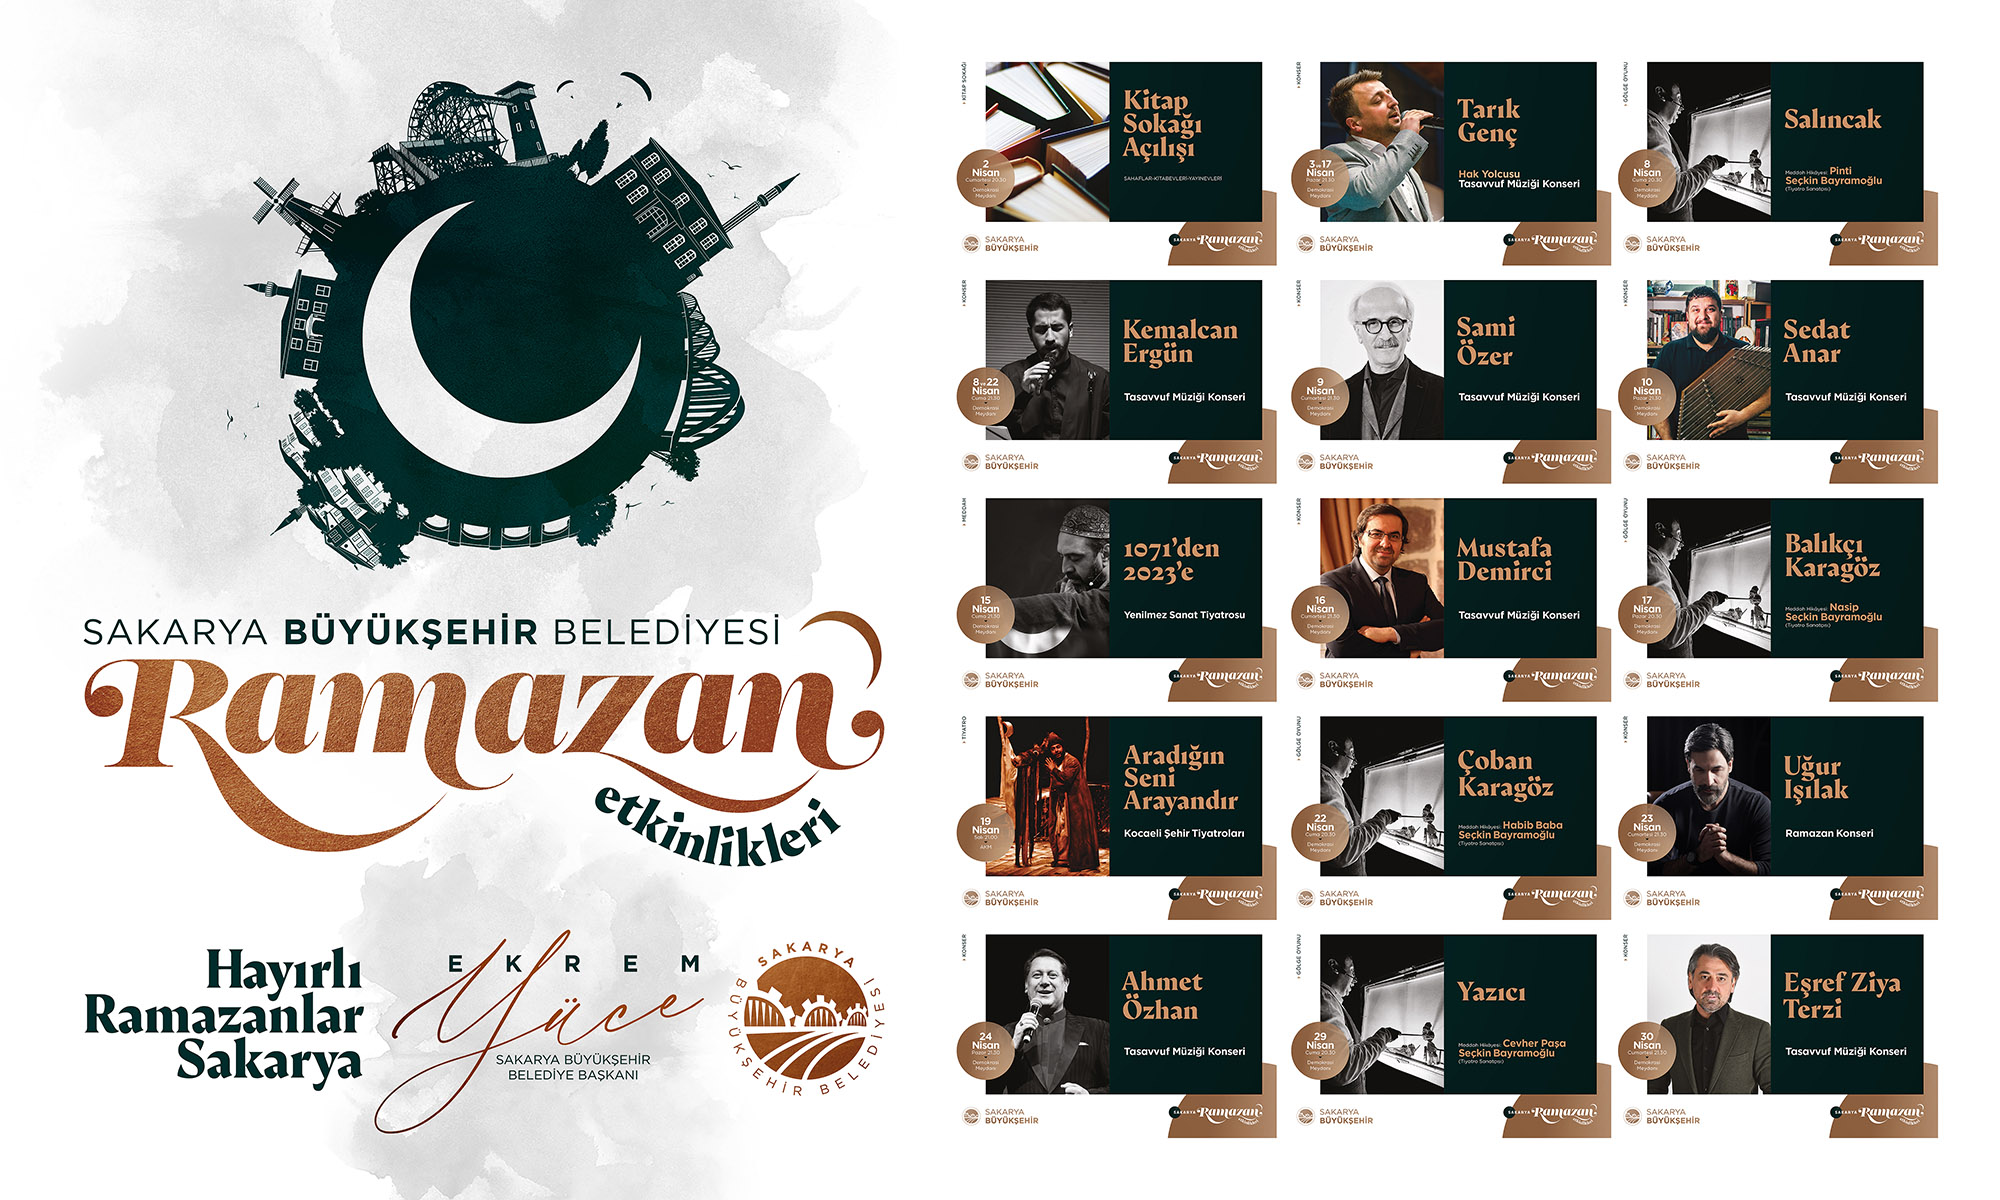 Büyükşehir Ramazan etkinlikleri dolu dolu geçecek